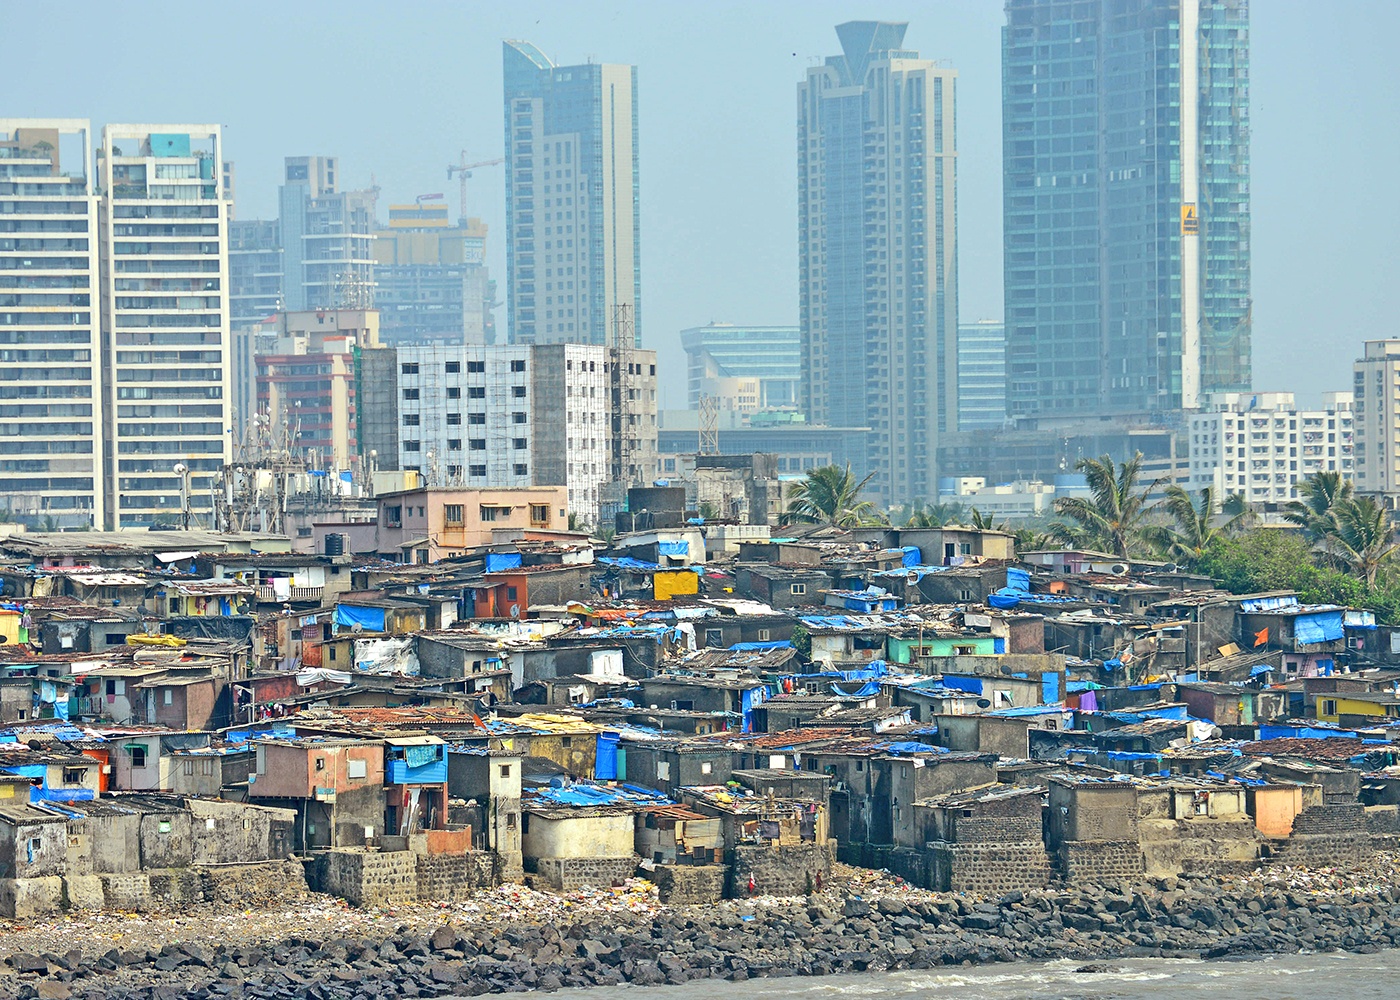 slum tourism economic